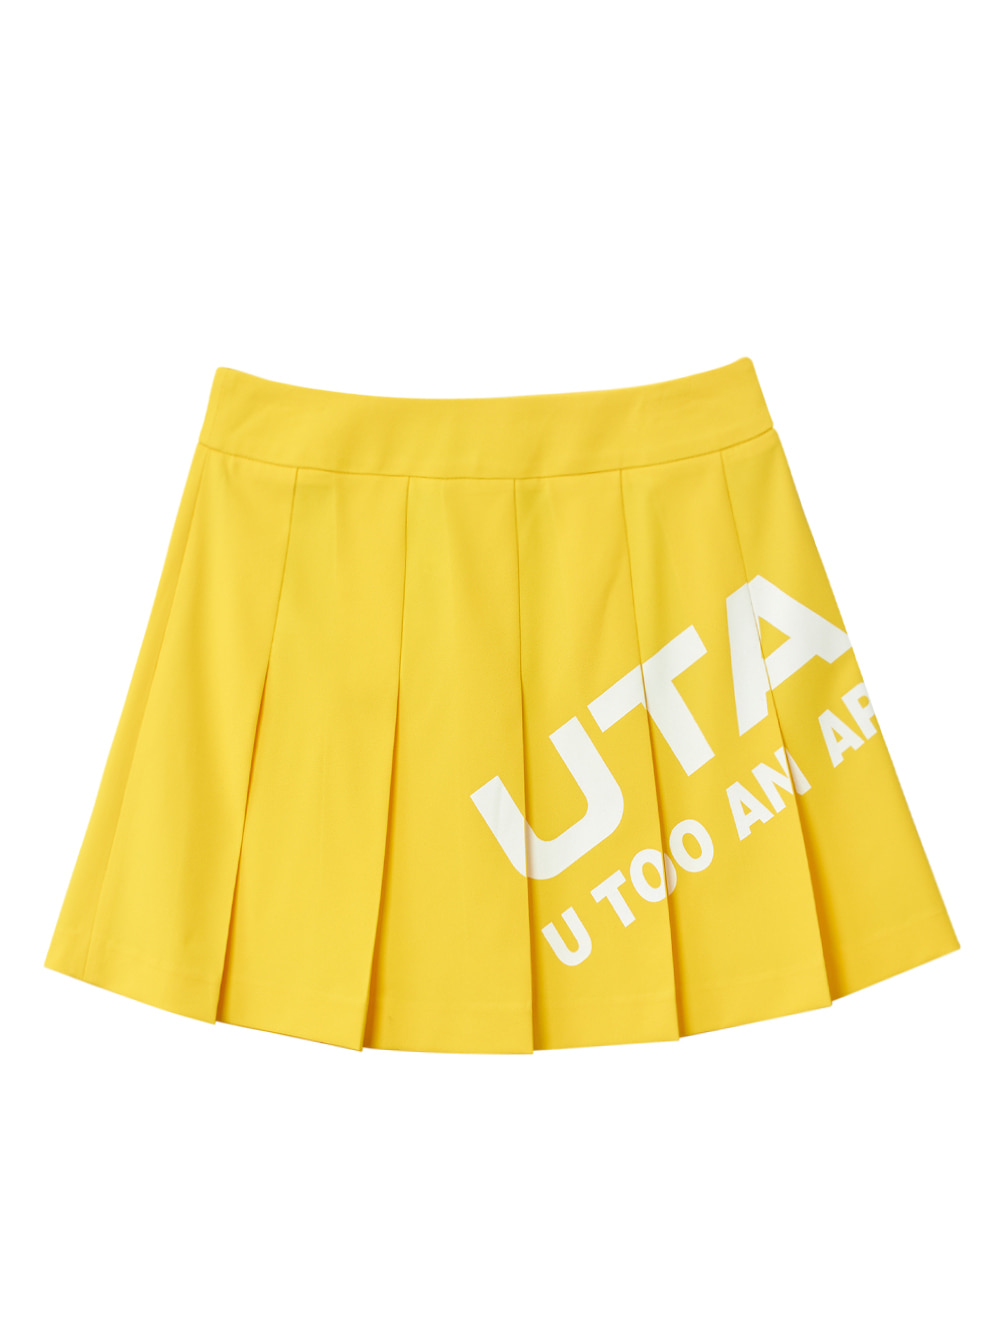 UTAA Bounce Logo Fan Skirt : Yellow (UB2SKF280YE)